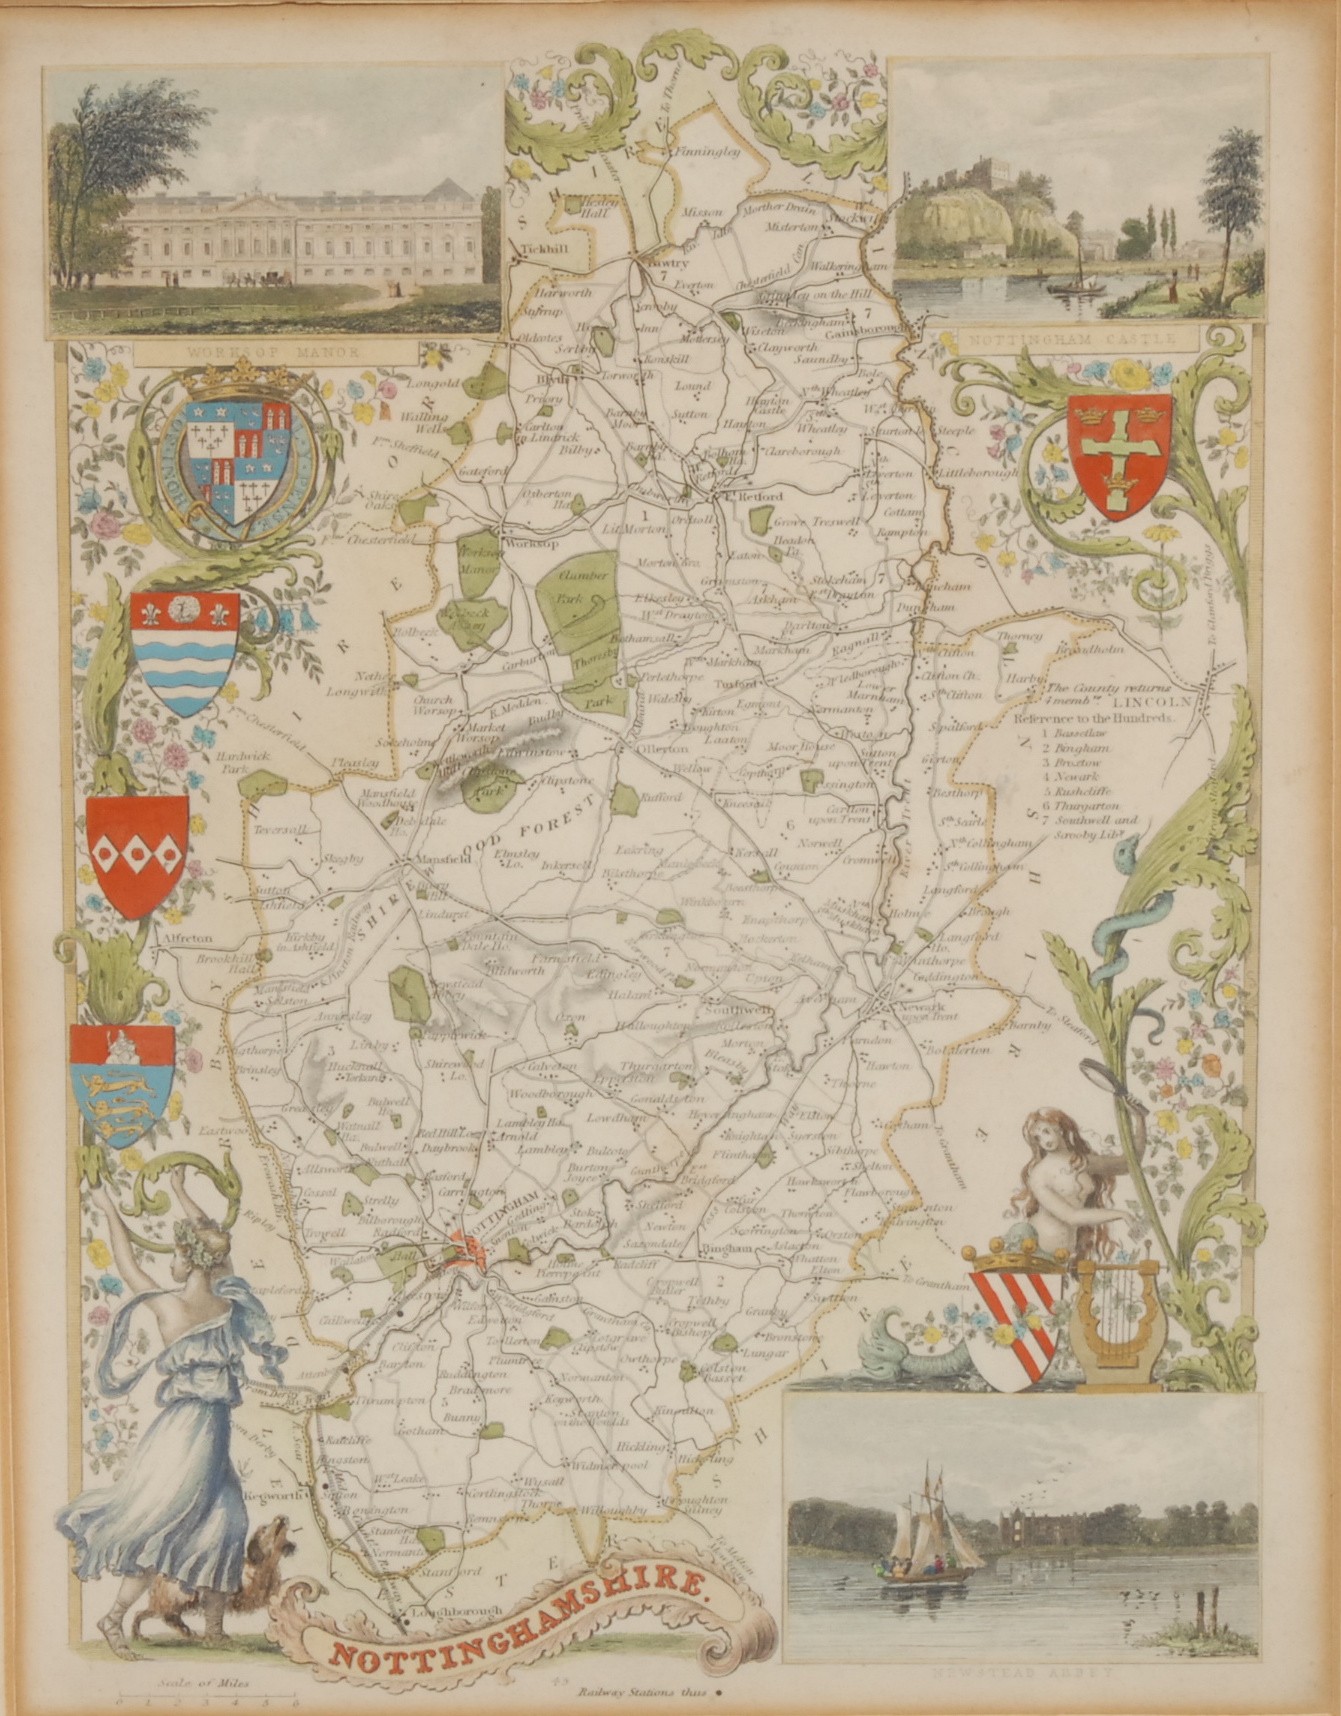 Thomas Moule, an engraved coloured map, Nottinghamshire, 26cm x 20cm